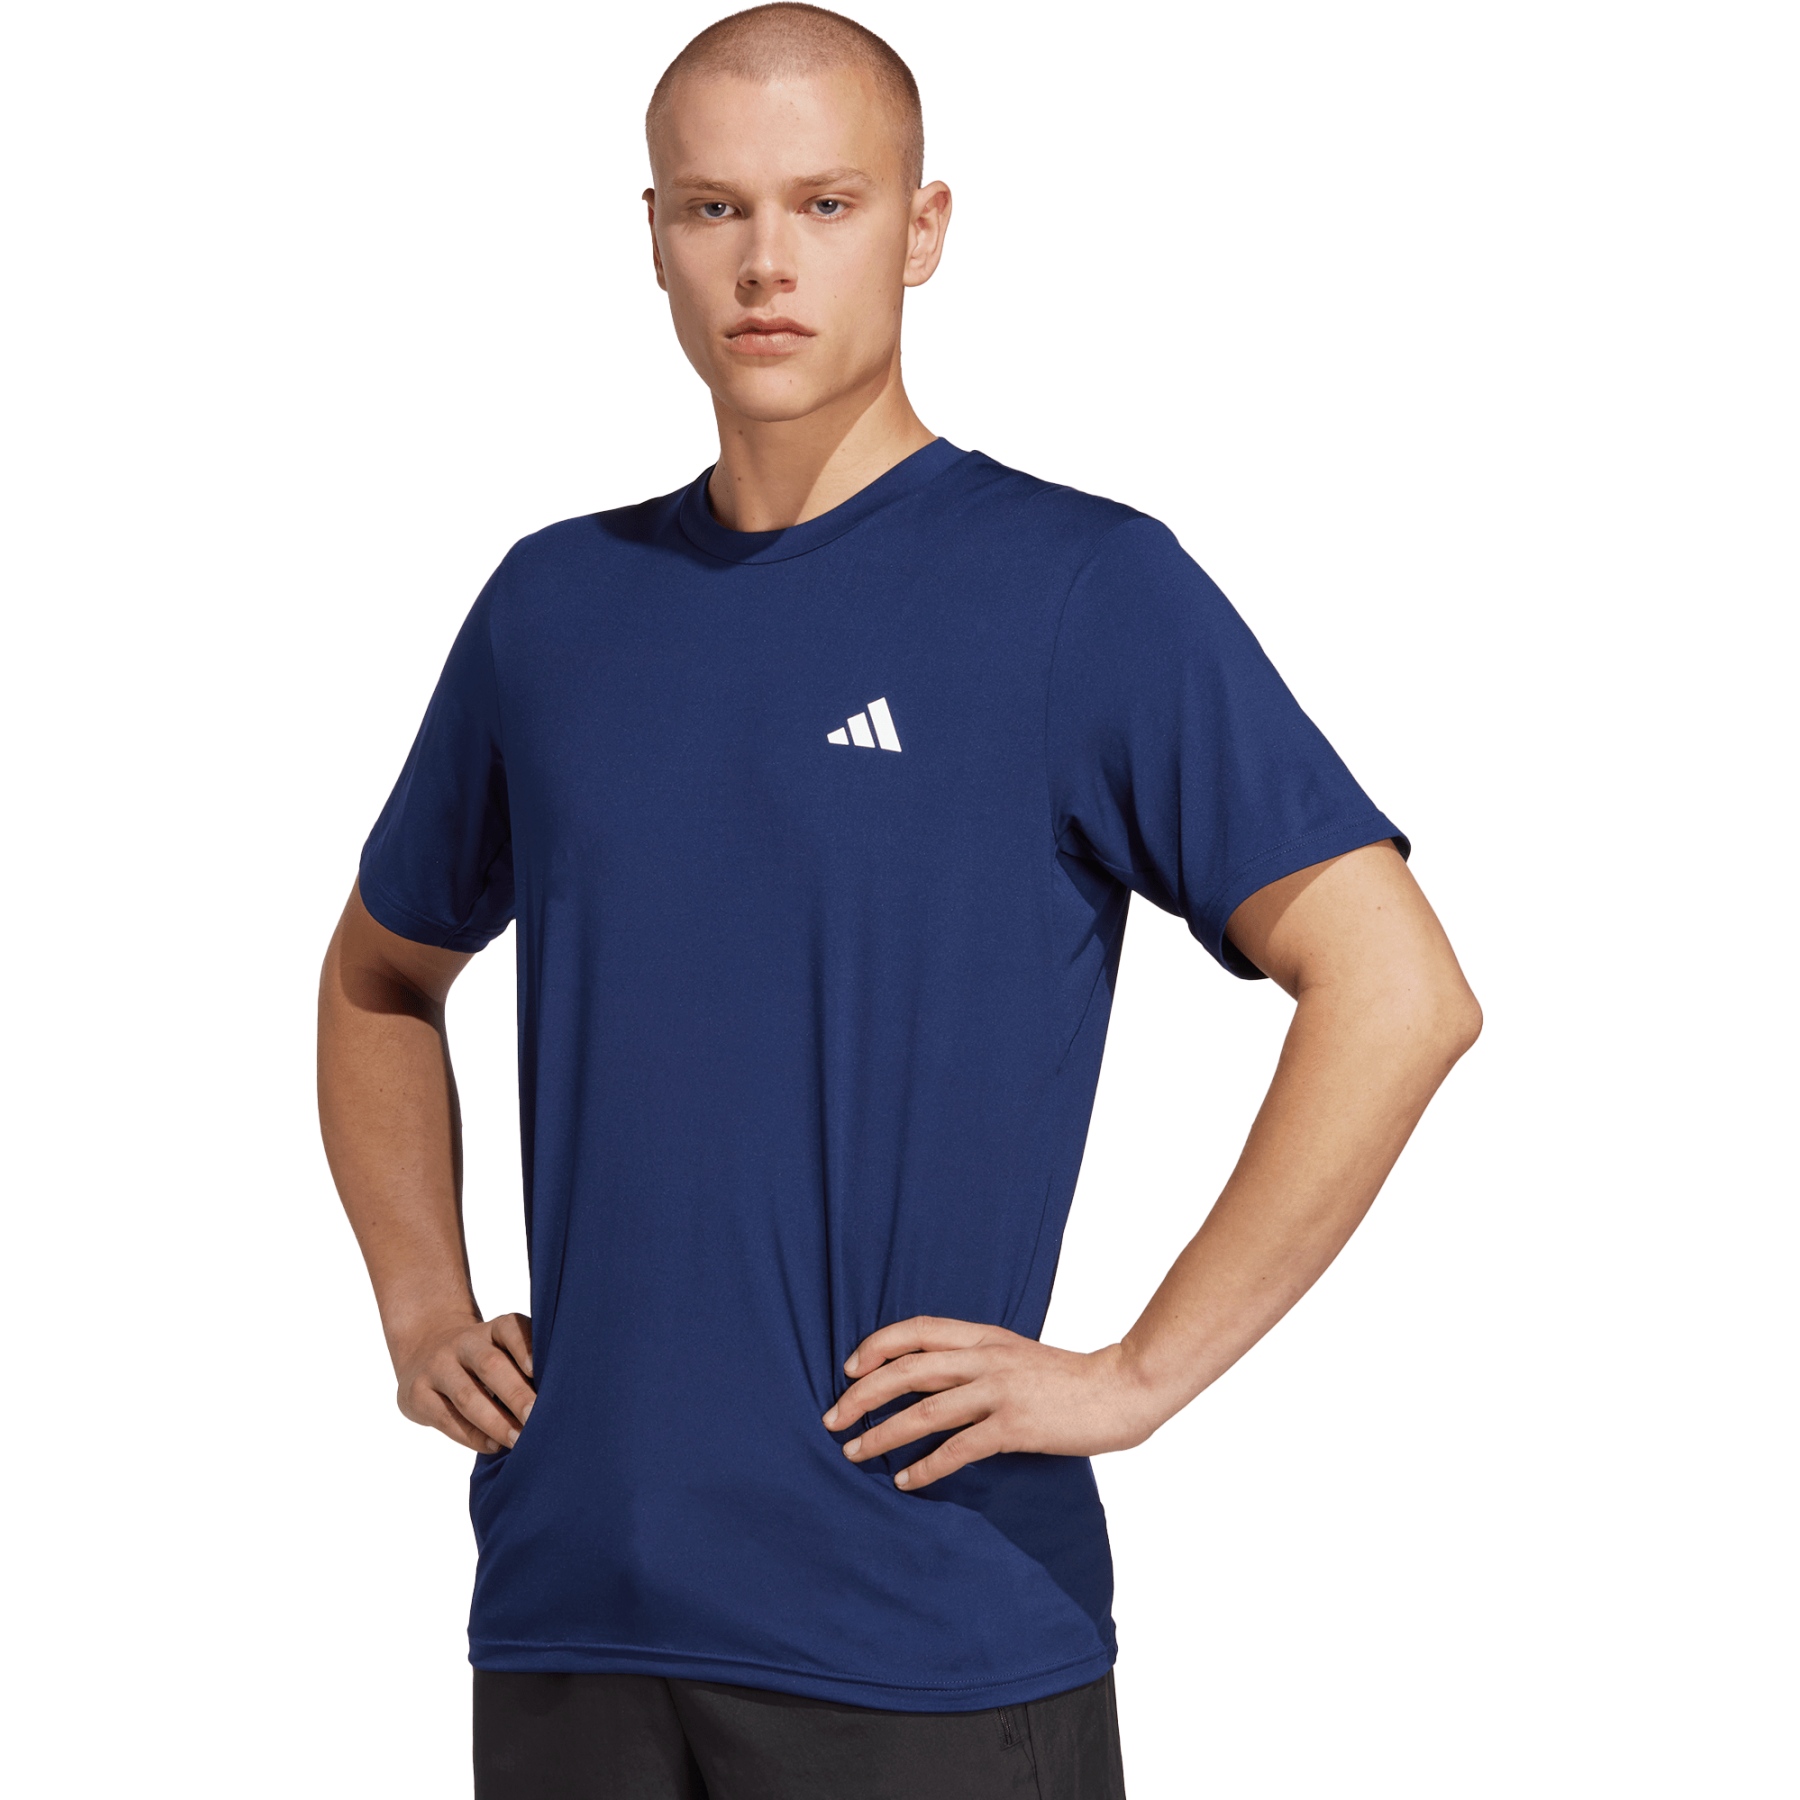 Produktbild von adidas Train Essentials Stretch Training T-Shirt Herren - dark blue/white IC7414